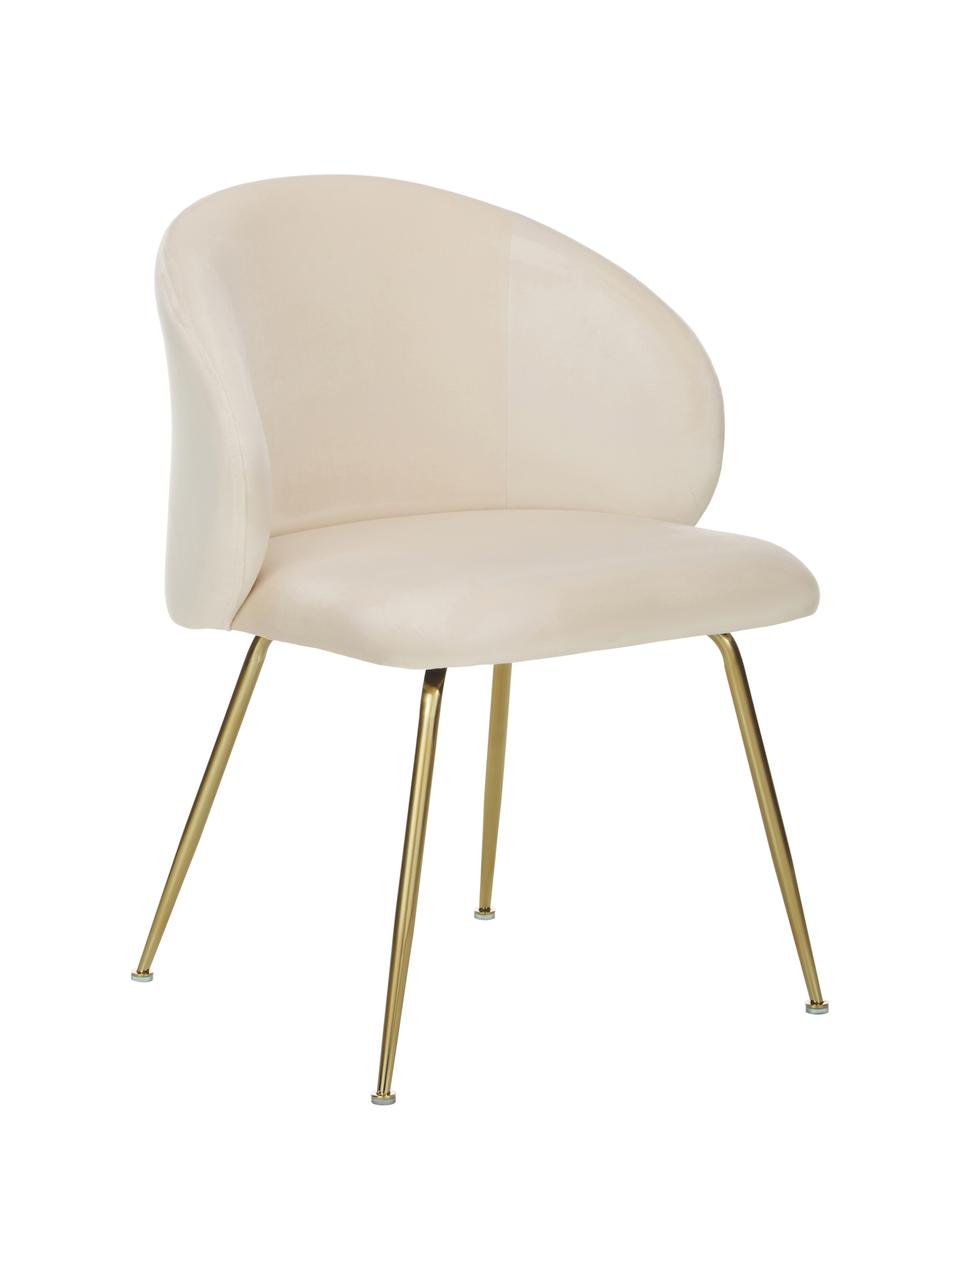 Fluwelen stoelen Luisa in crèmewit, 2 stuks, Bekleding: fluweel (100% polyester), Poten: gepoedercoat metaal, Fluweel crèmewit, goudkleurig, B 59 x D 58 cm